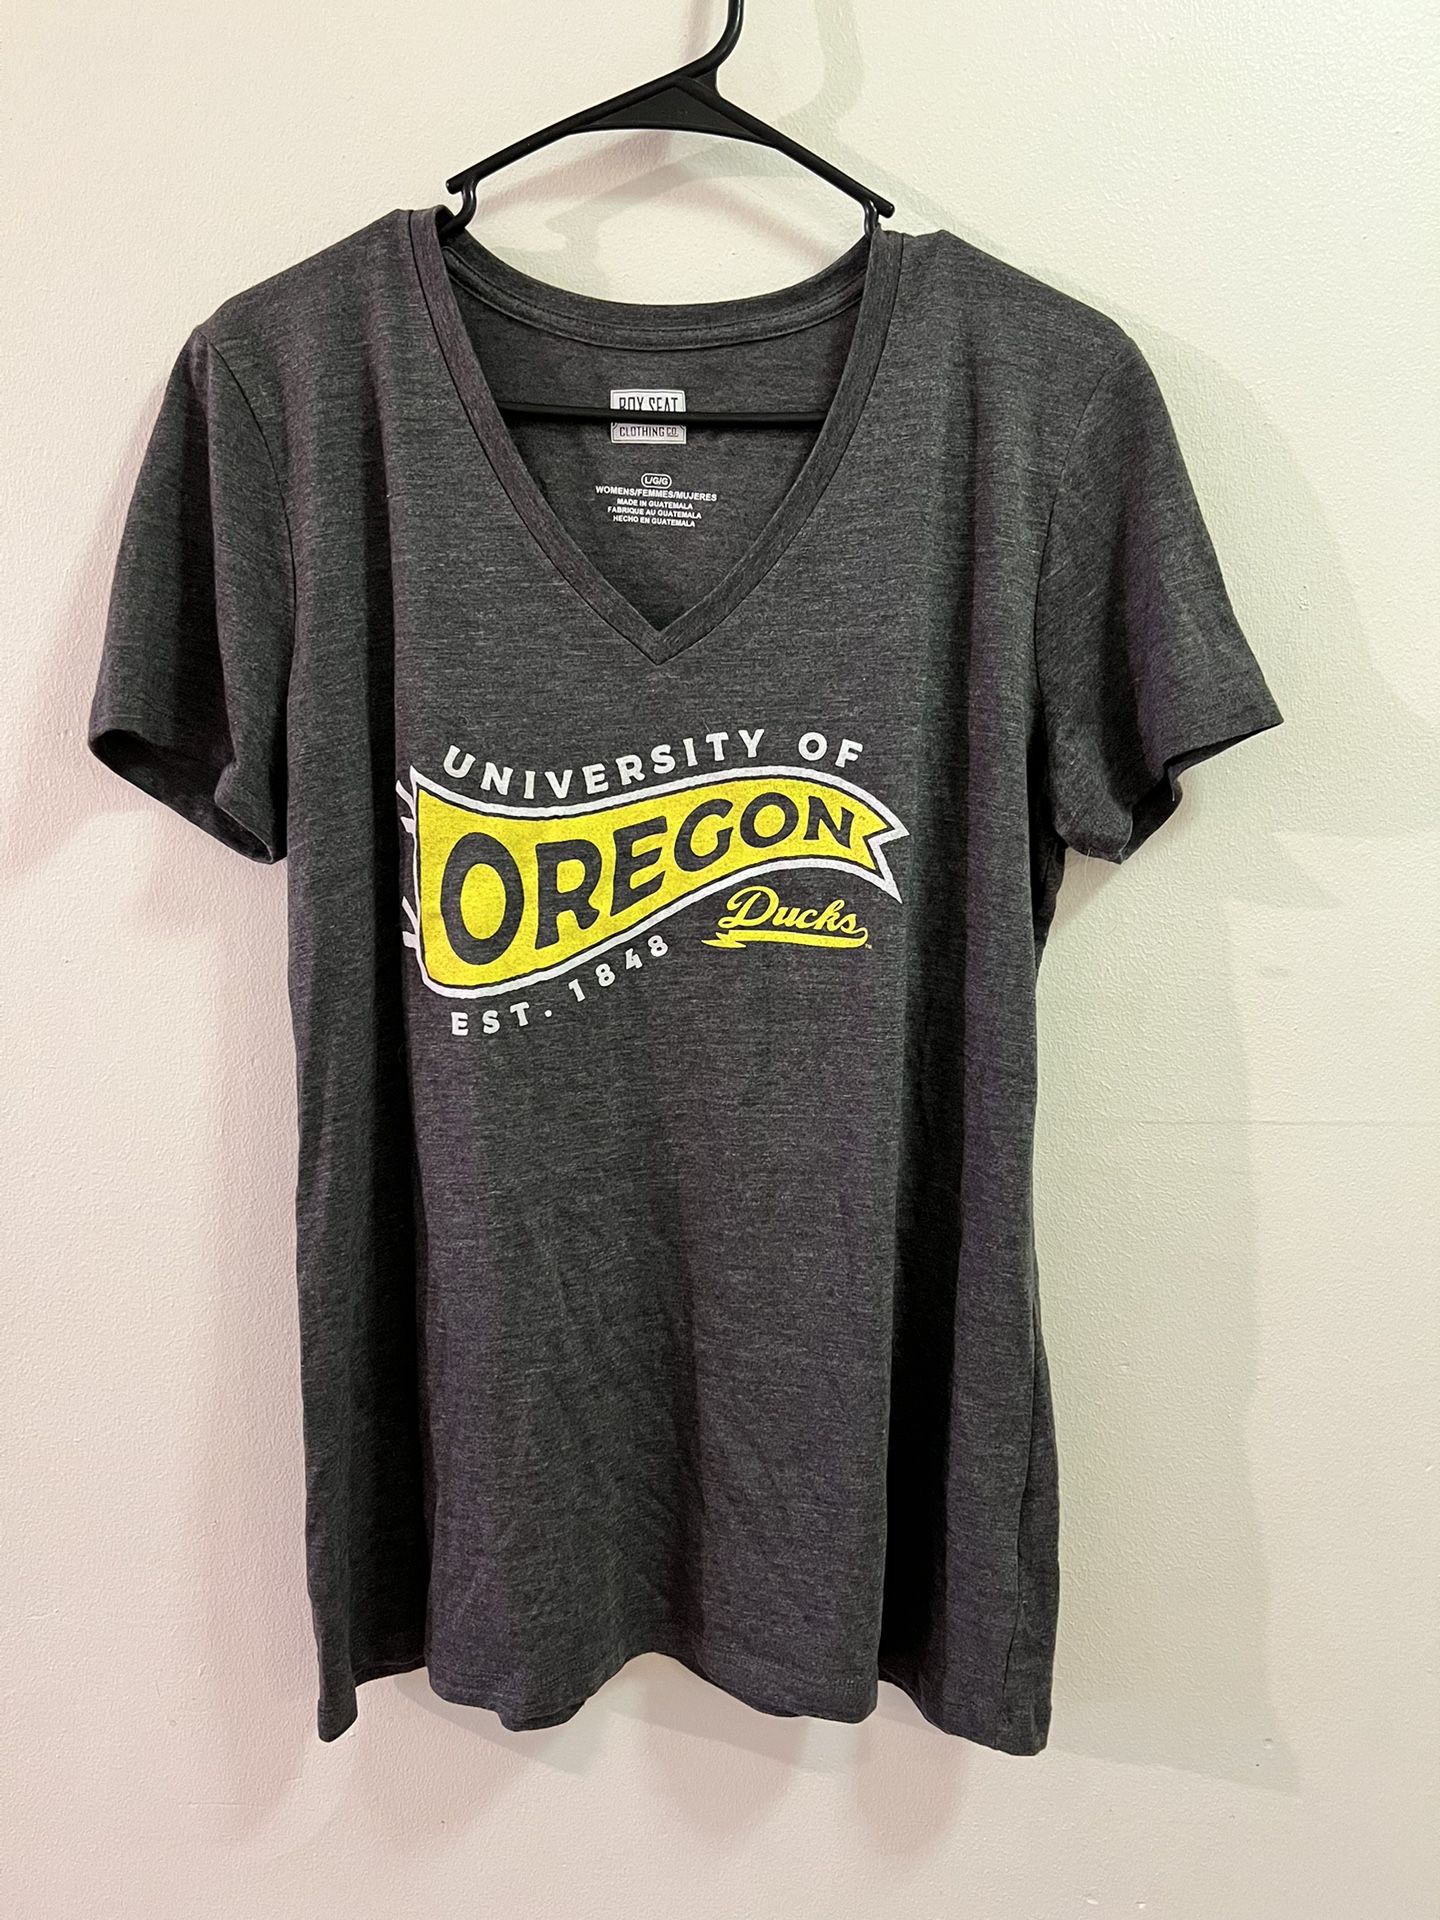 Womans Size Large Oregon Ducks Shirt 